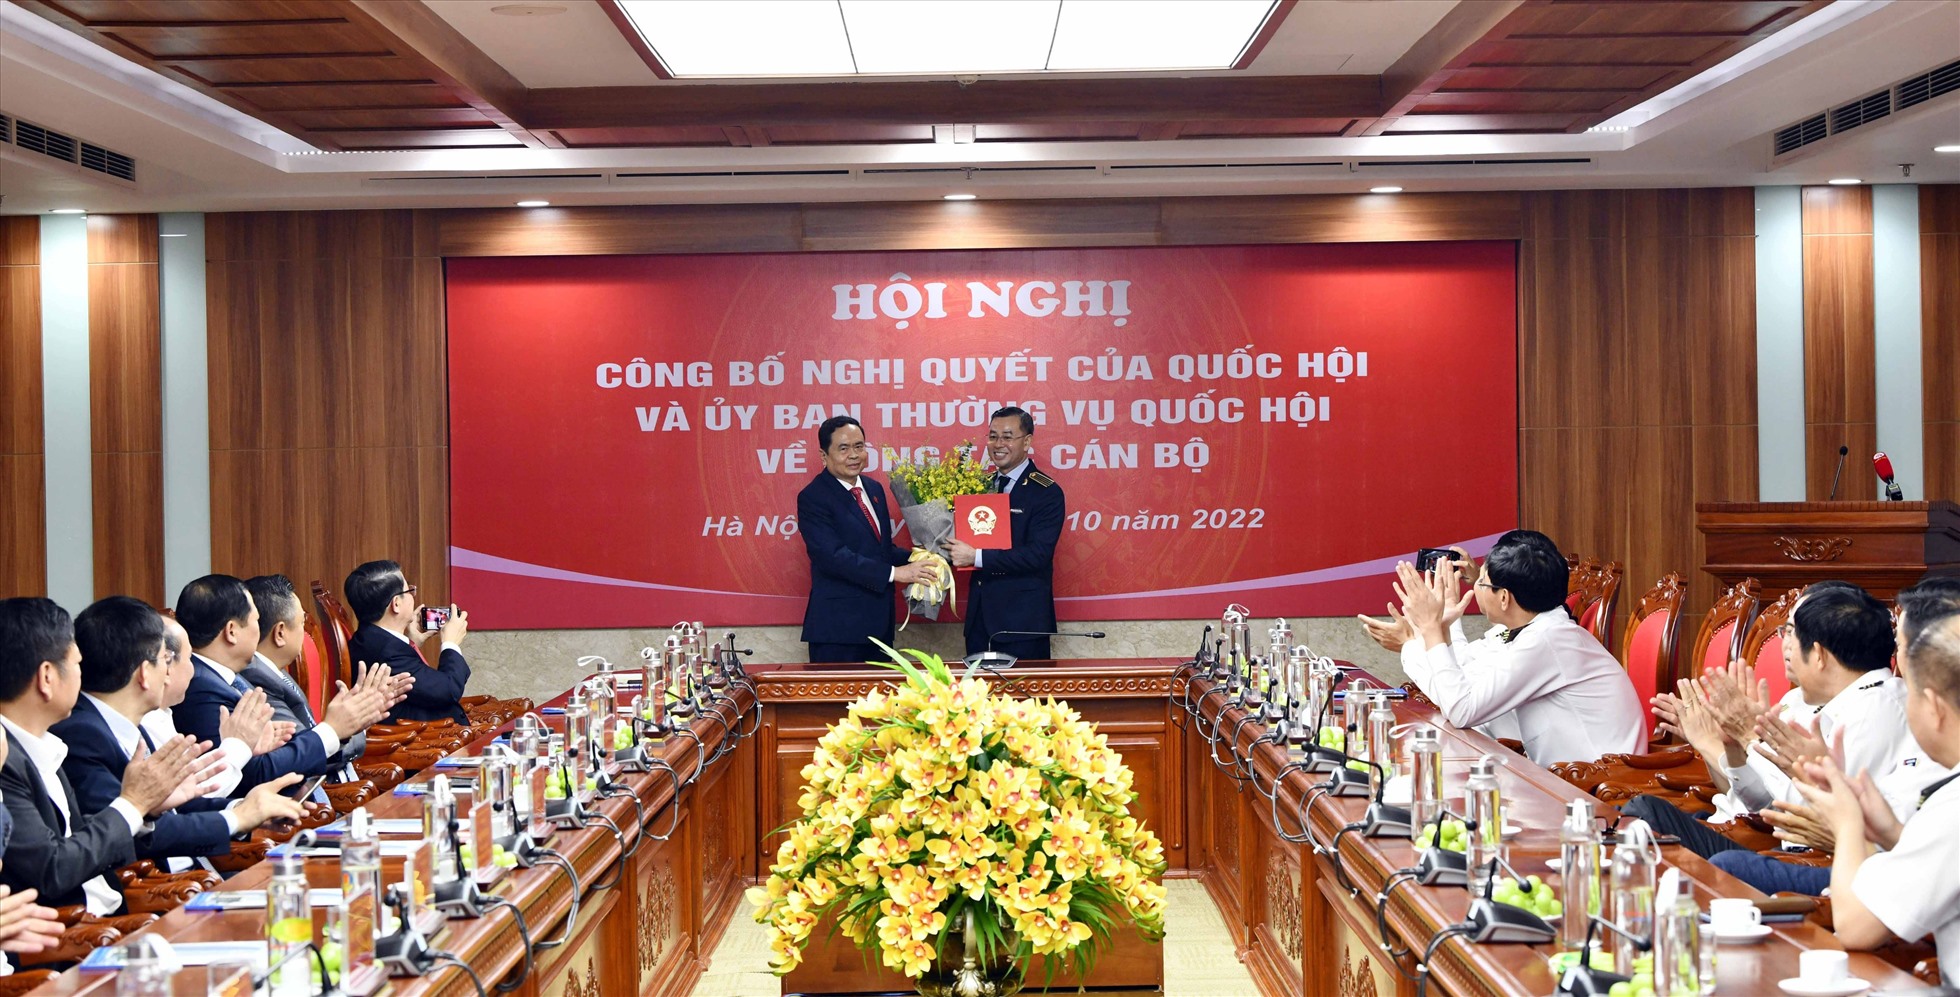 Phó Chủ tịch Thường trực Quốc hội Trần Thanh Mẫn trao Nghị quyết của Quốc hội cho ông Ngô Văn Tuấn.